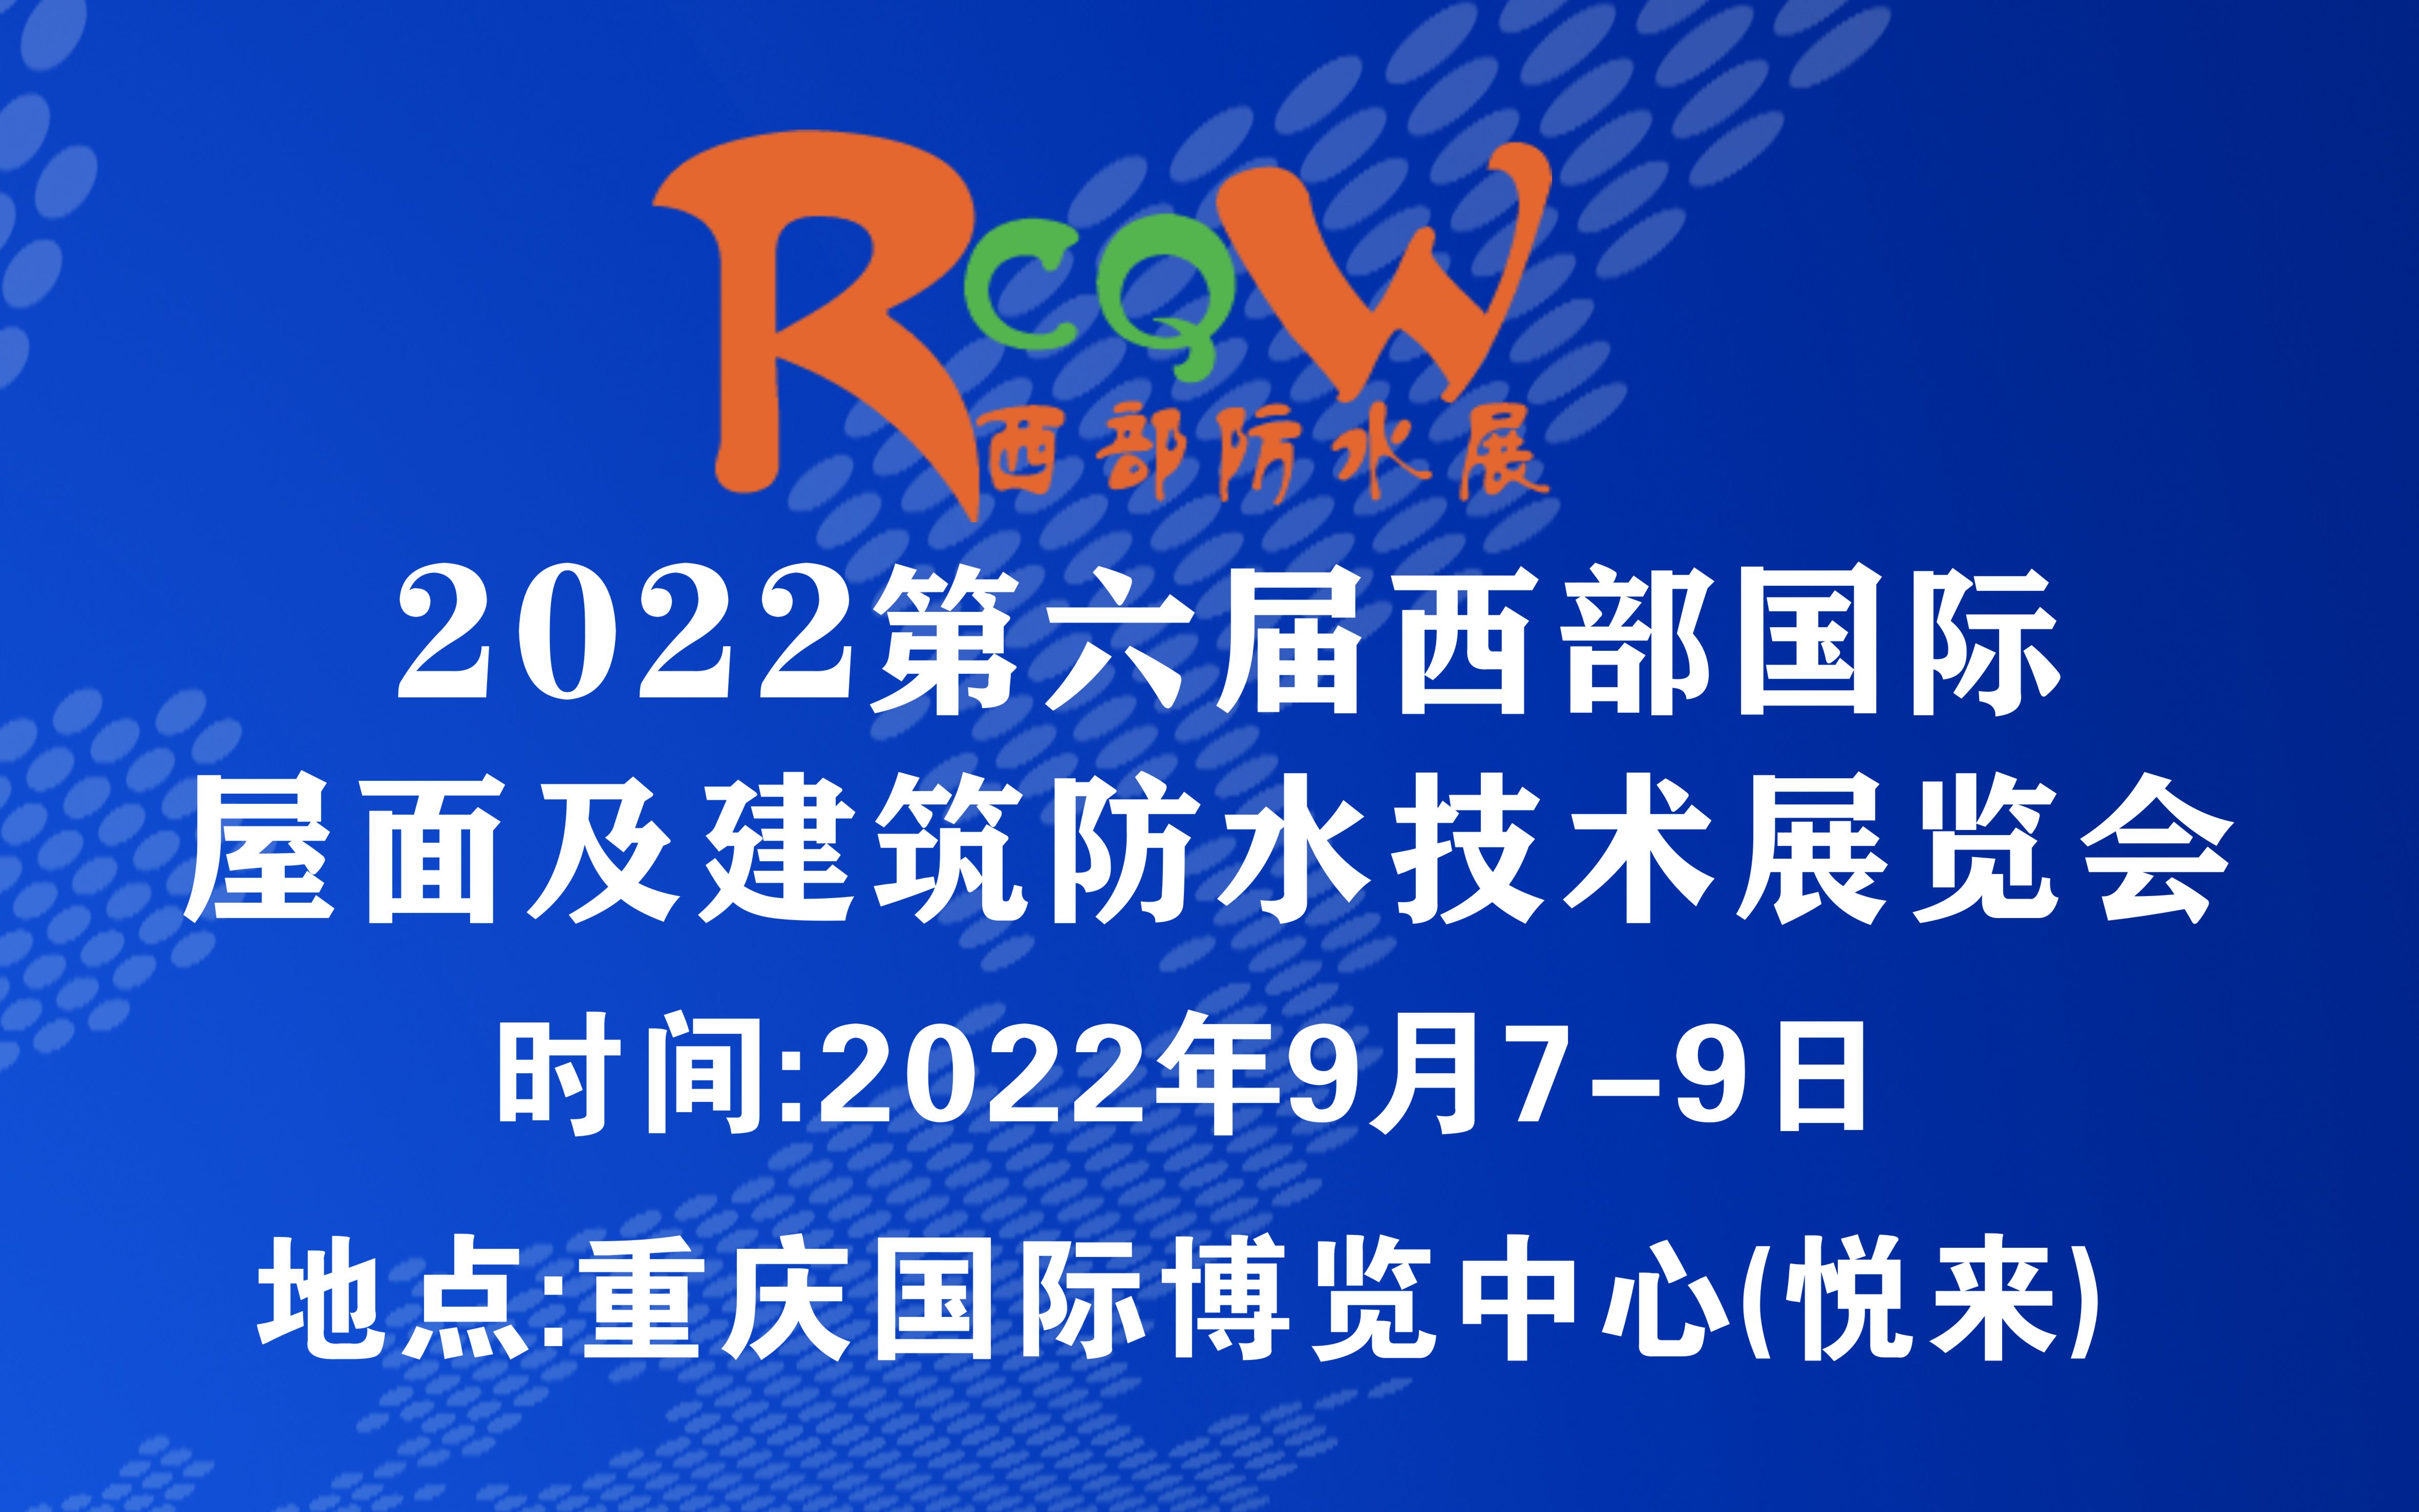 2022第六屆西部重慶國際屋面及建筑防水技術展覽會